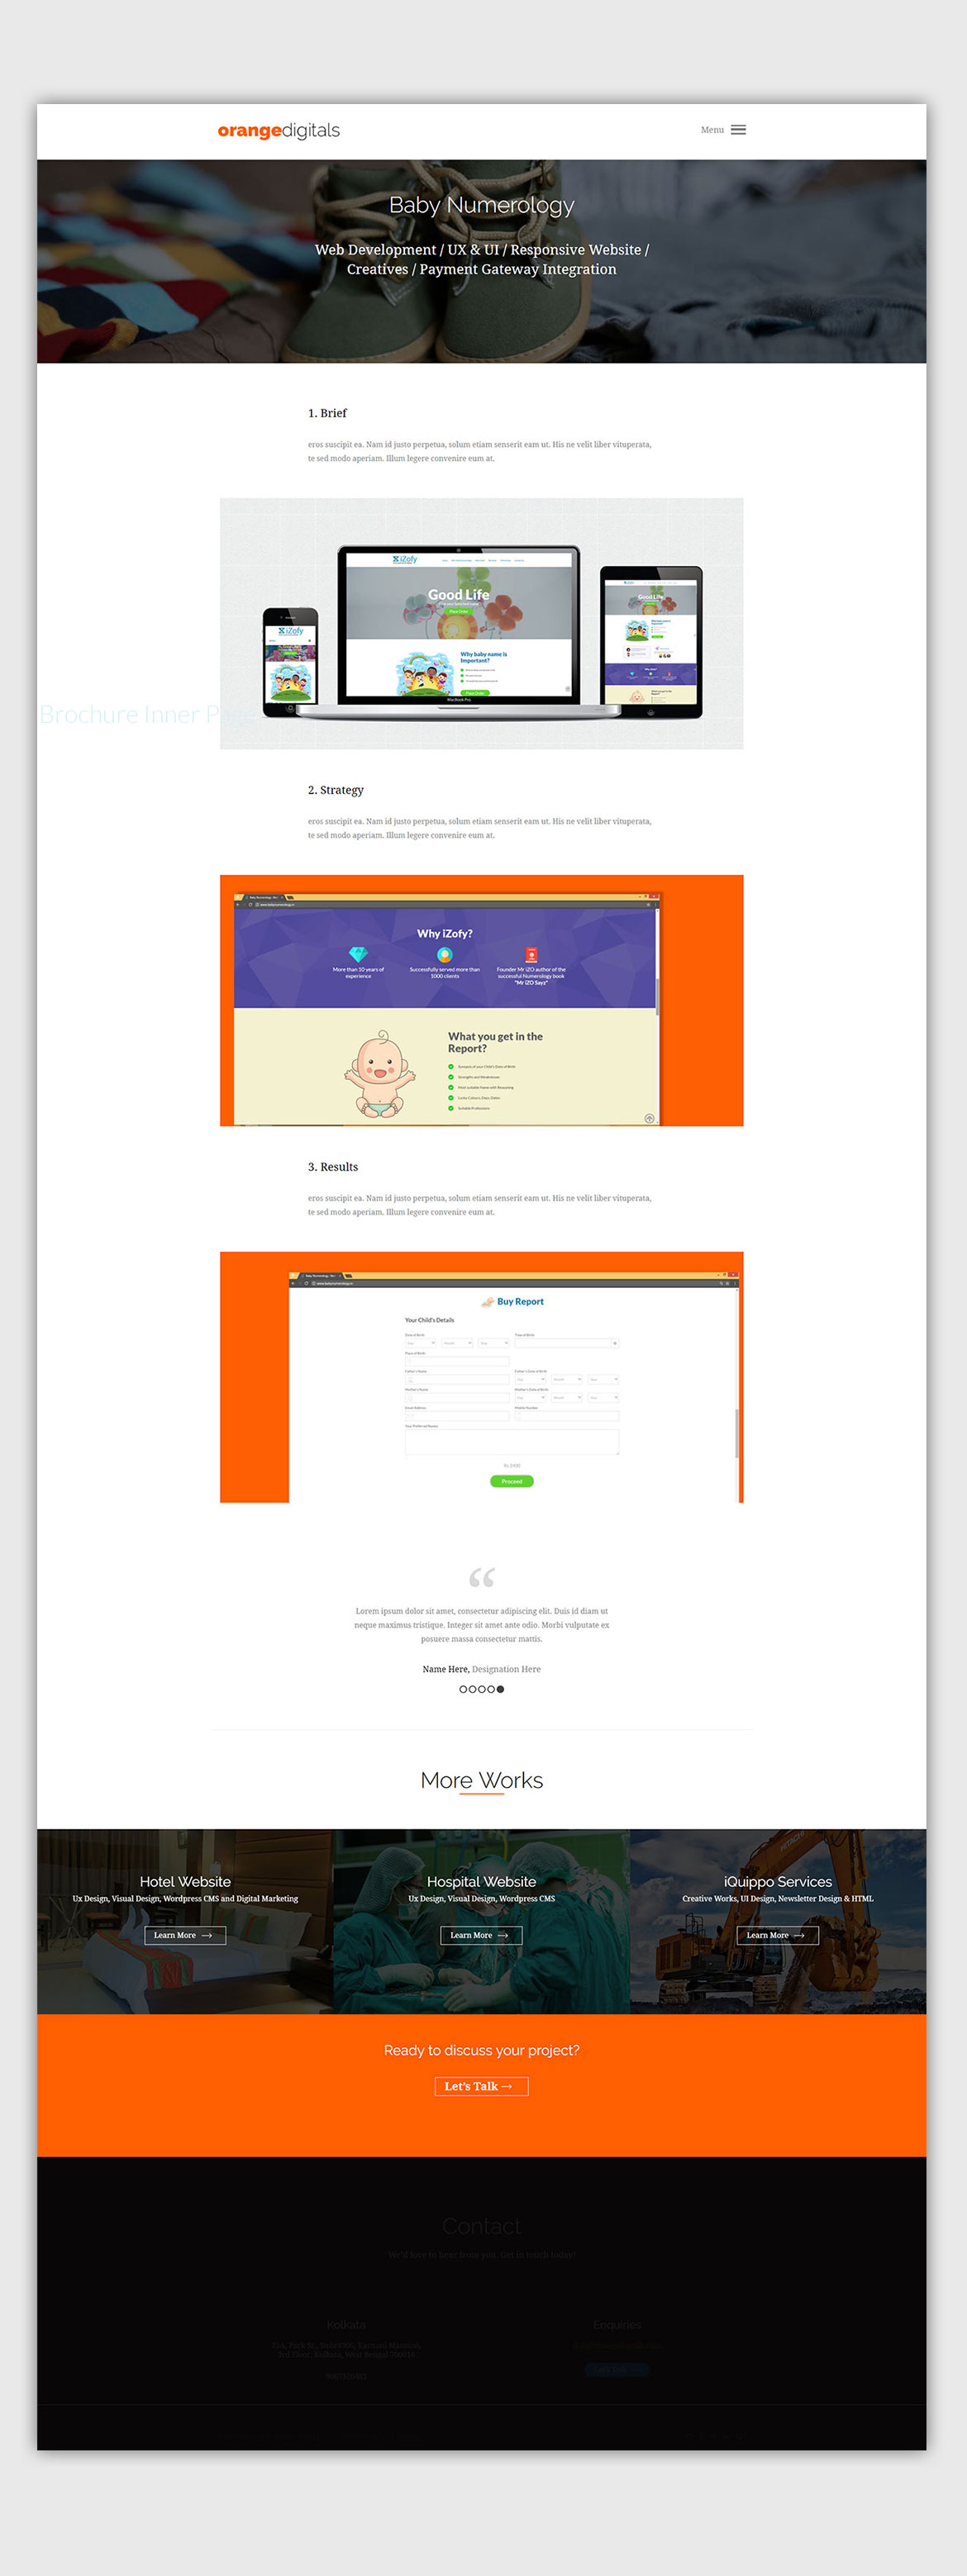 digital-agency-website-design-ui-design-project-details